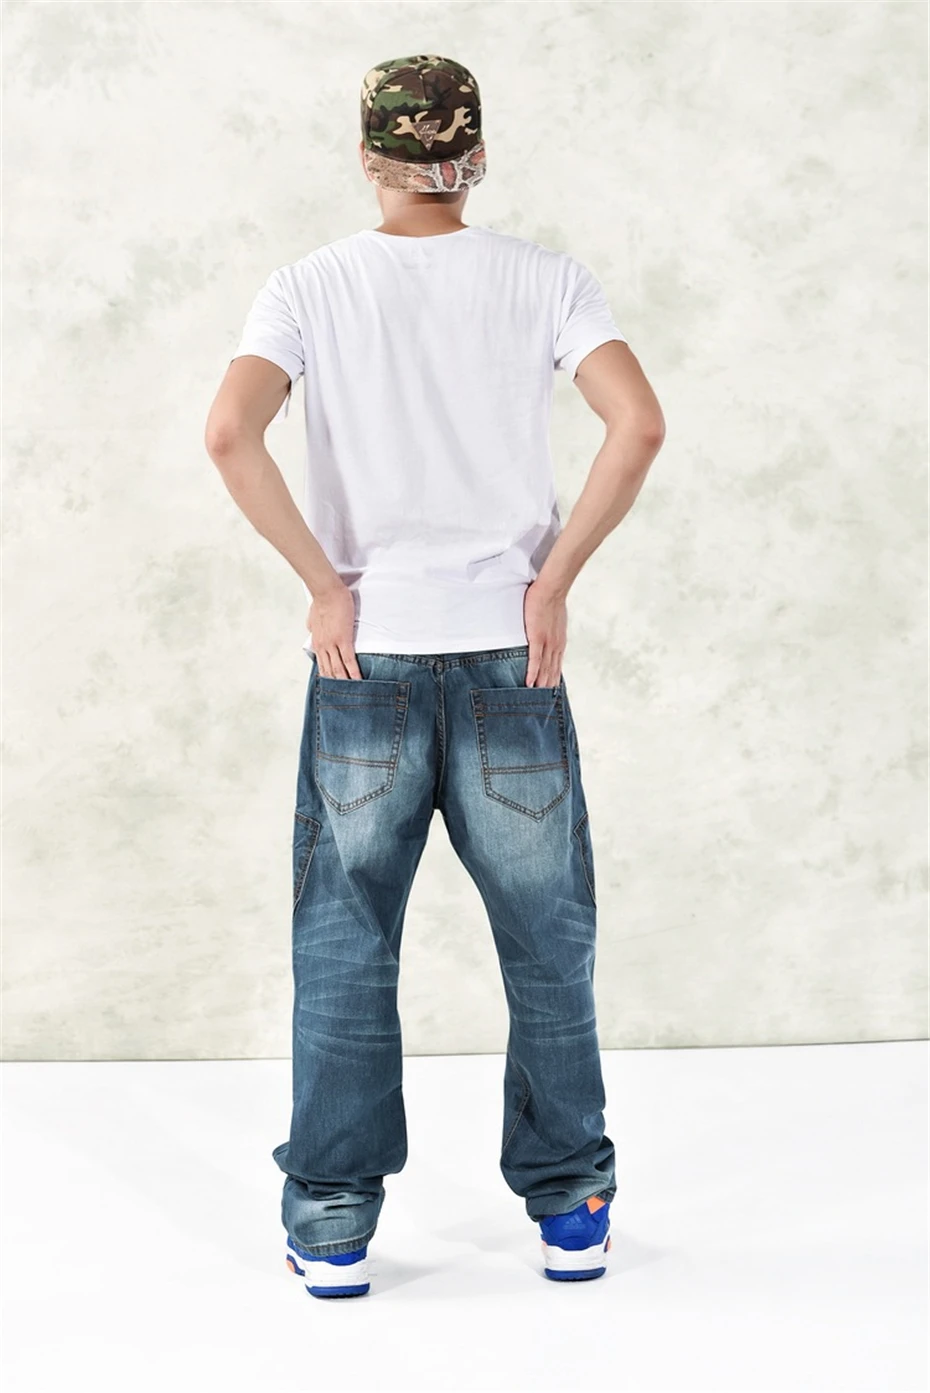 Мешковатые джинсы Для мужчин джинсовые штаны Свободные уличная джинсы хип-хоп Повседневное скейтборд брюки для Для мужчин плюс Размеры